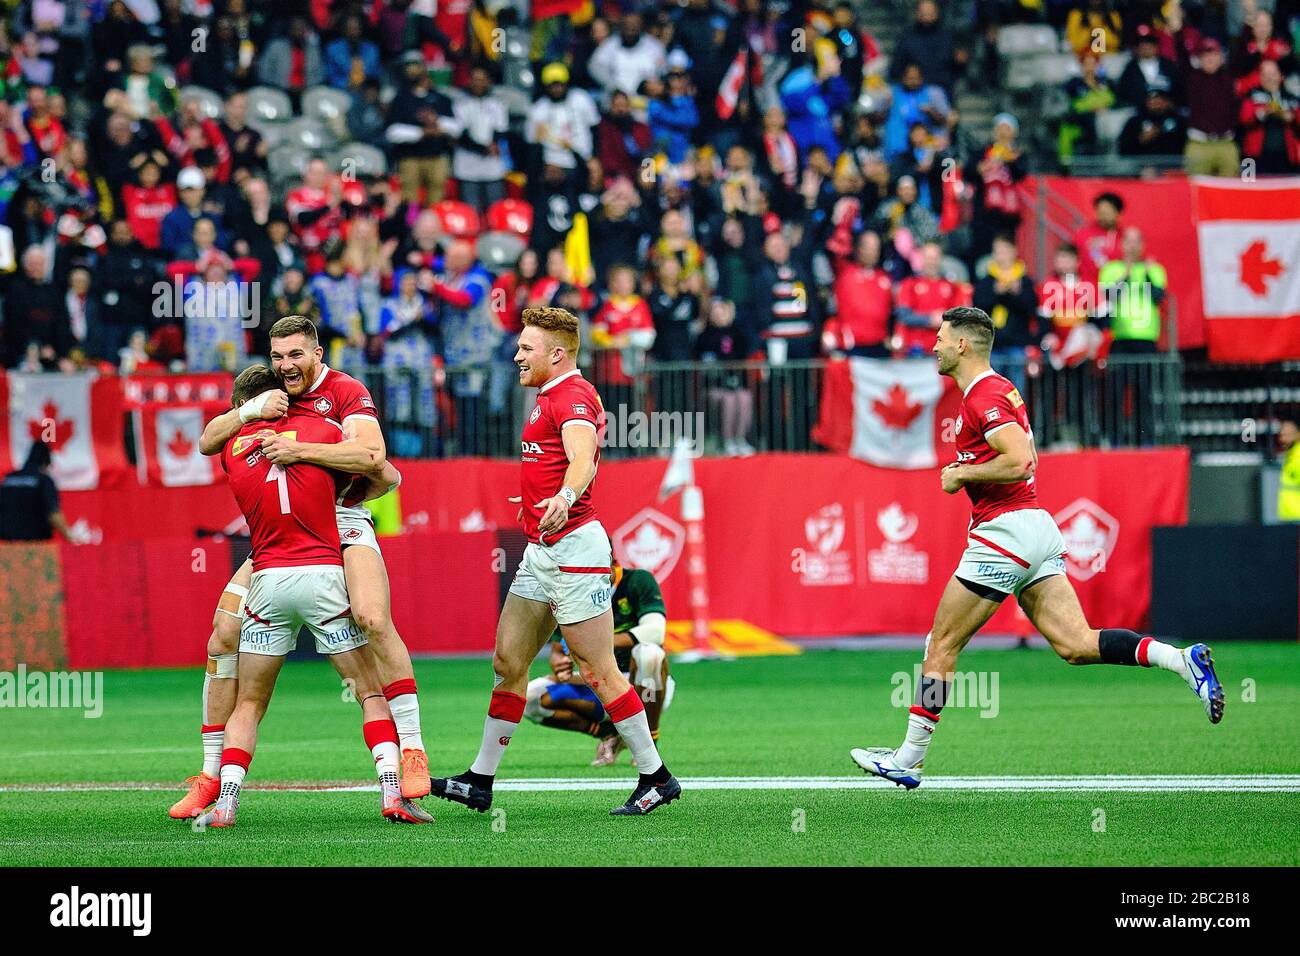 Vancouver, Canadá. 8 de marzo de 2020. Canadá celebra después de derrotar a Sudáfrica para ganar bronce durante el día 2 - 2020 HSBC World Rugby Sevens Series en Foto de stock